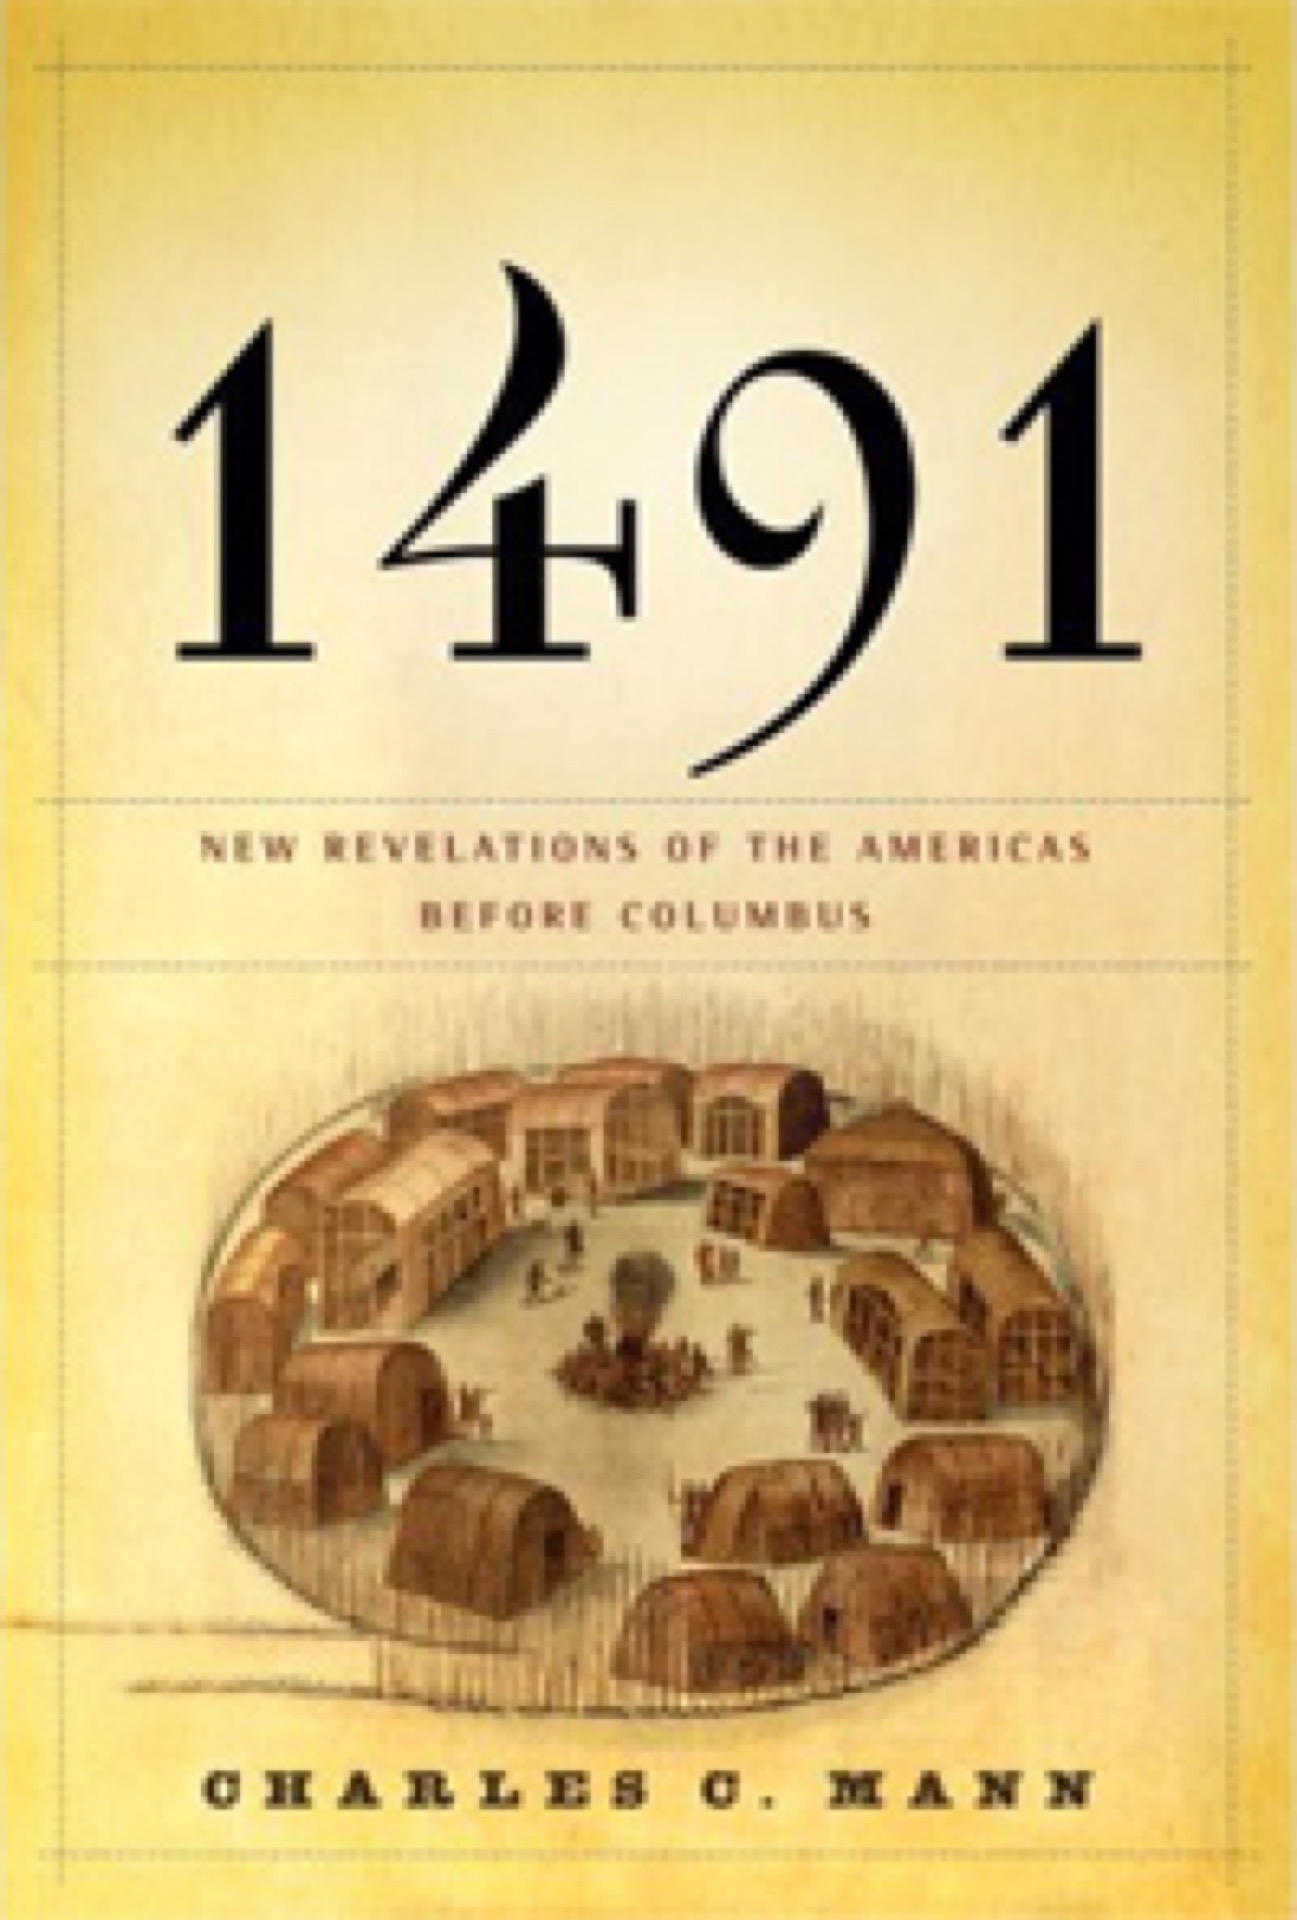 1491-cover (1920).jpg